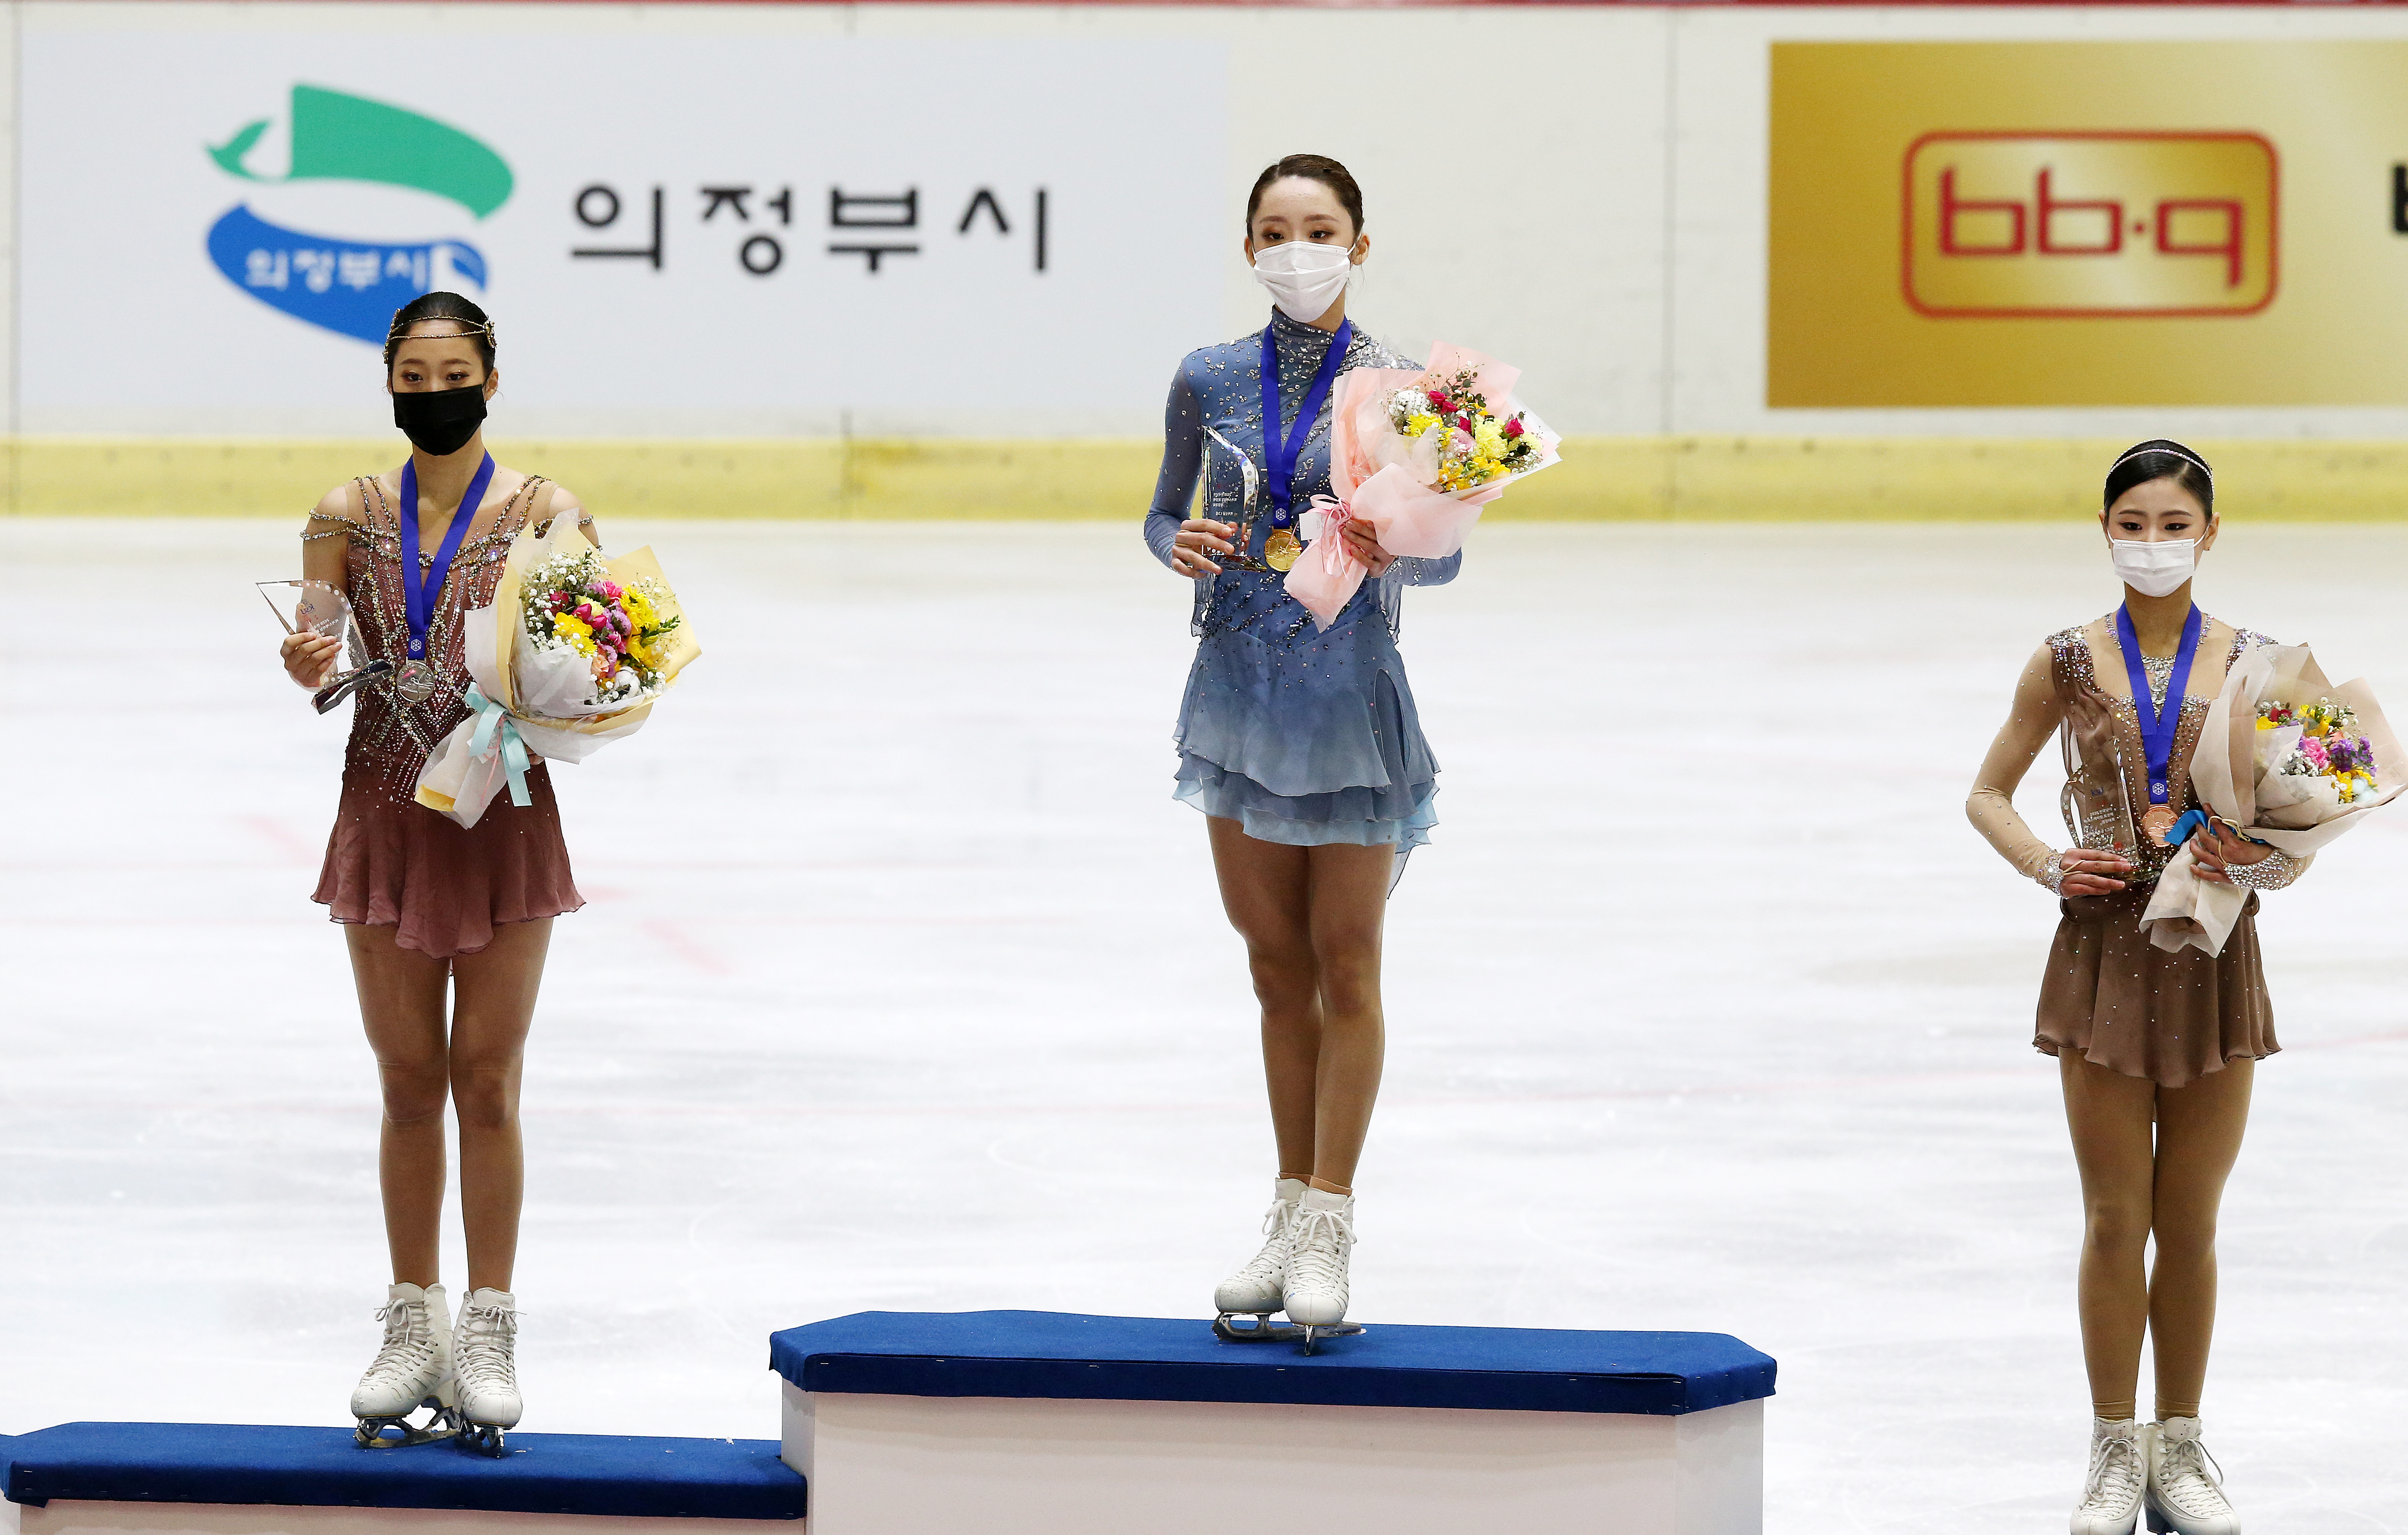 전국남녀 피겨스케이팅 회장배 랭킹대회 우승한 김예림. 2위는 유영, 3위는 윤아선이 차지했다.